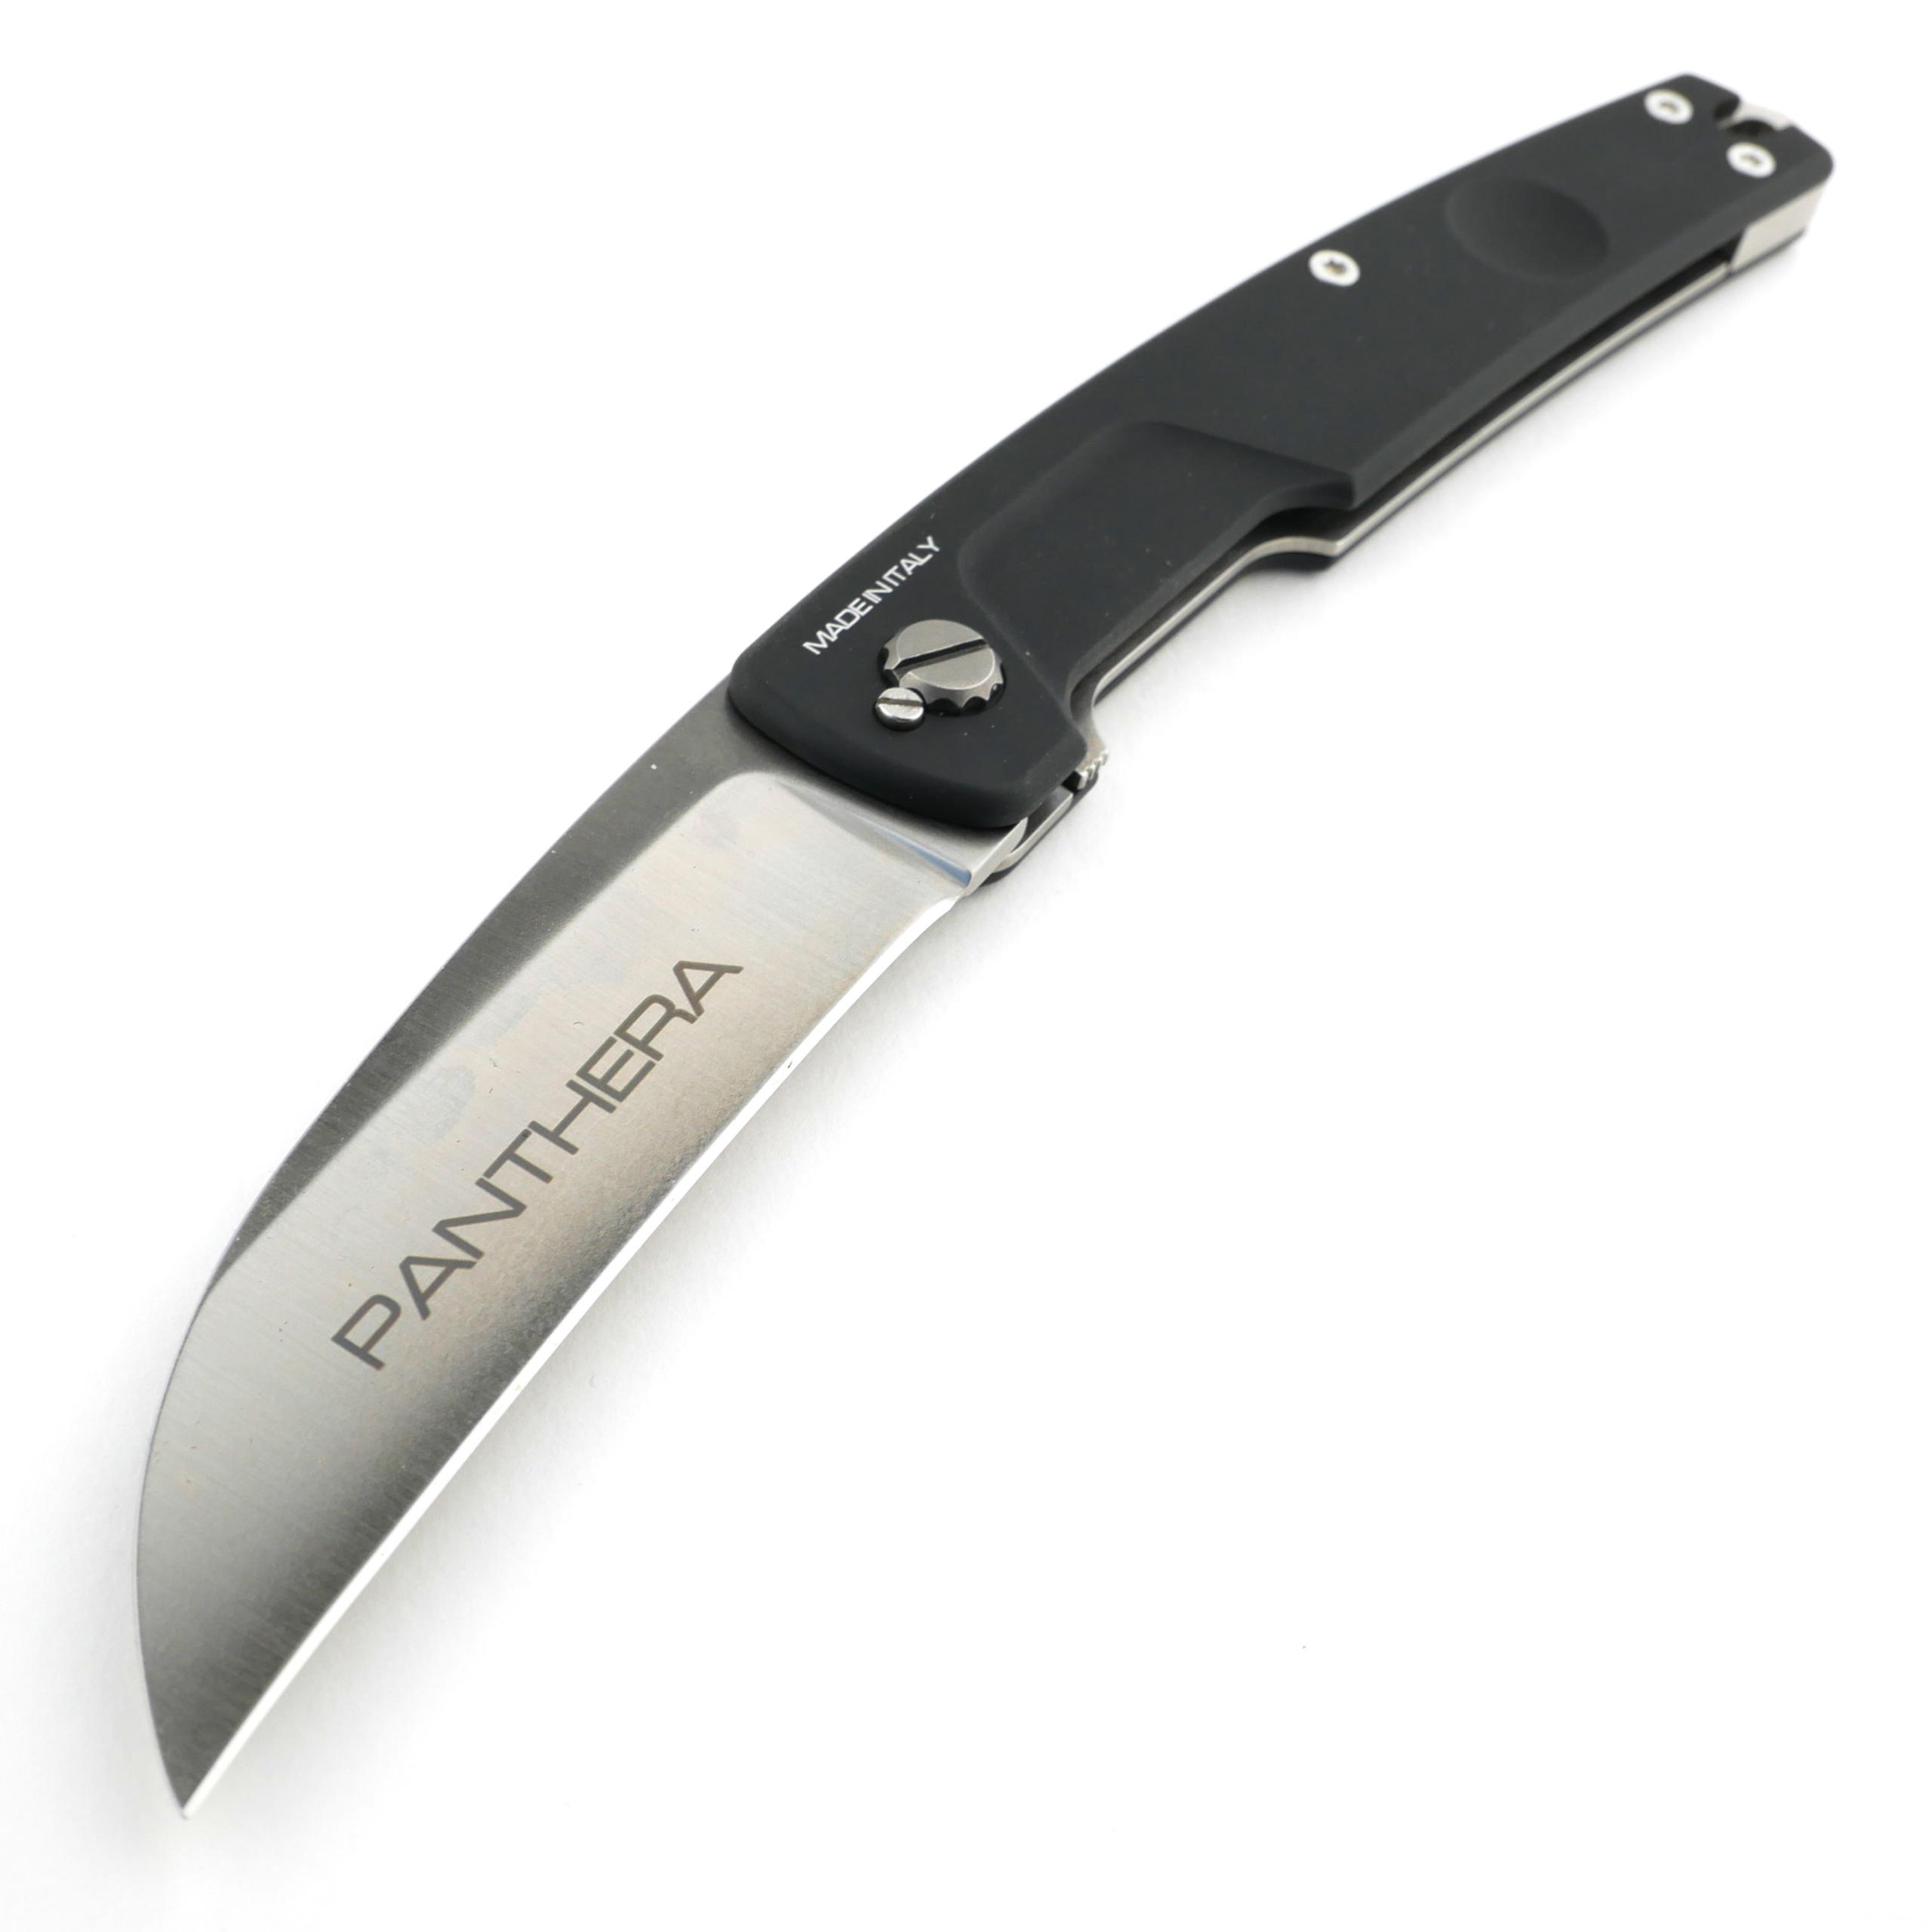 Knife Review: Extrema Ratio Panthera